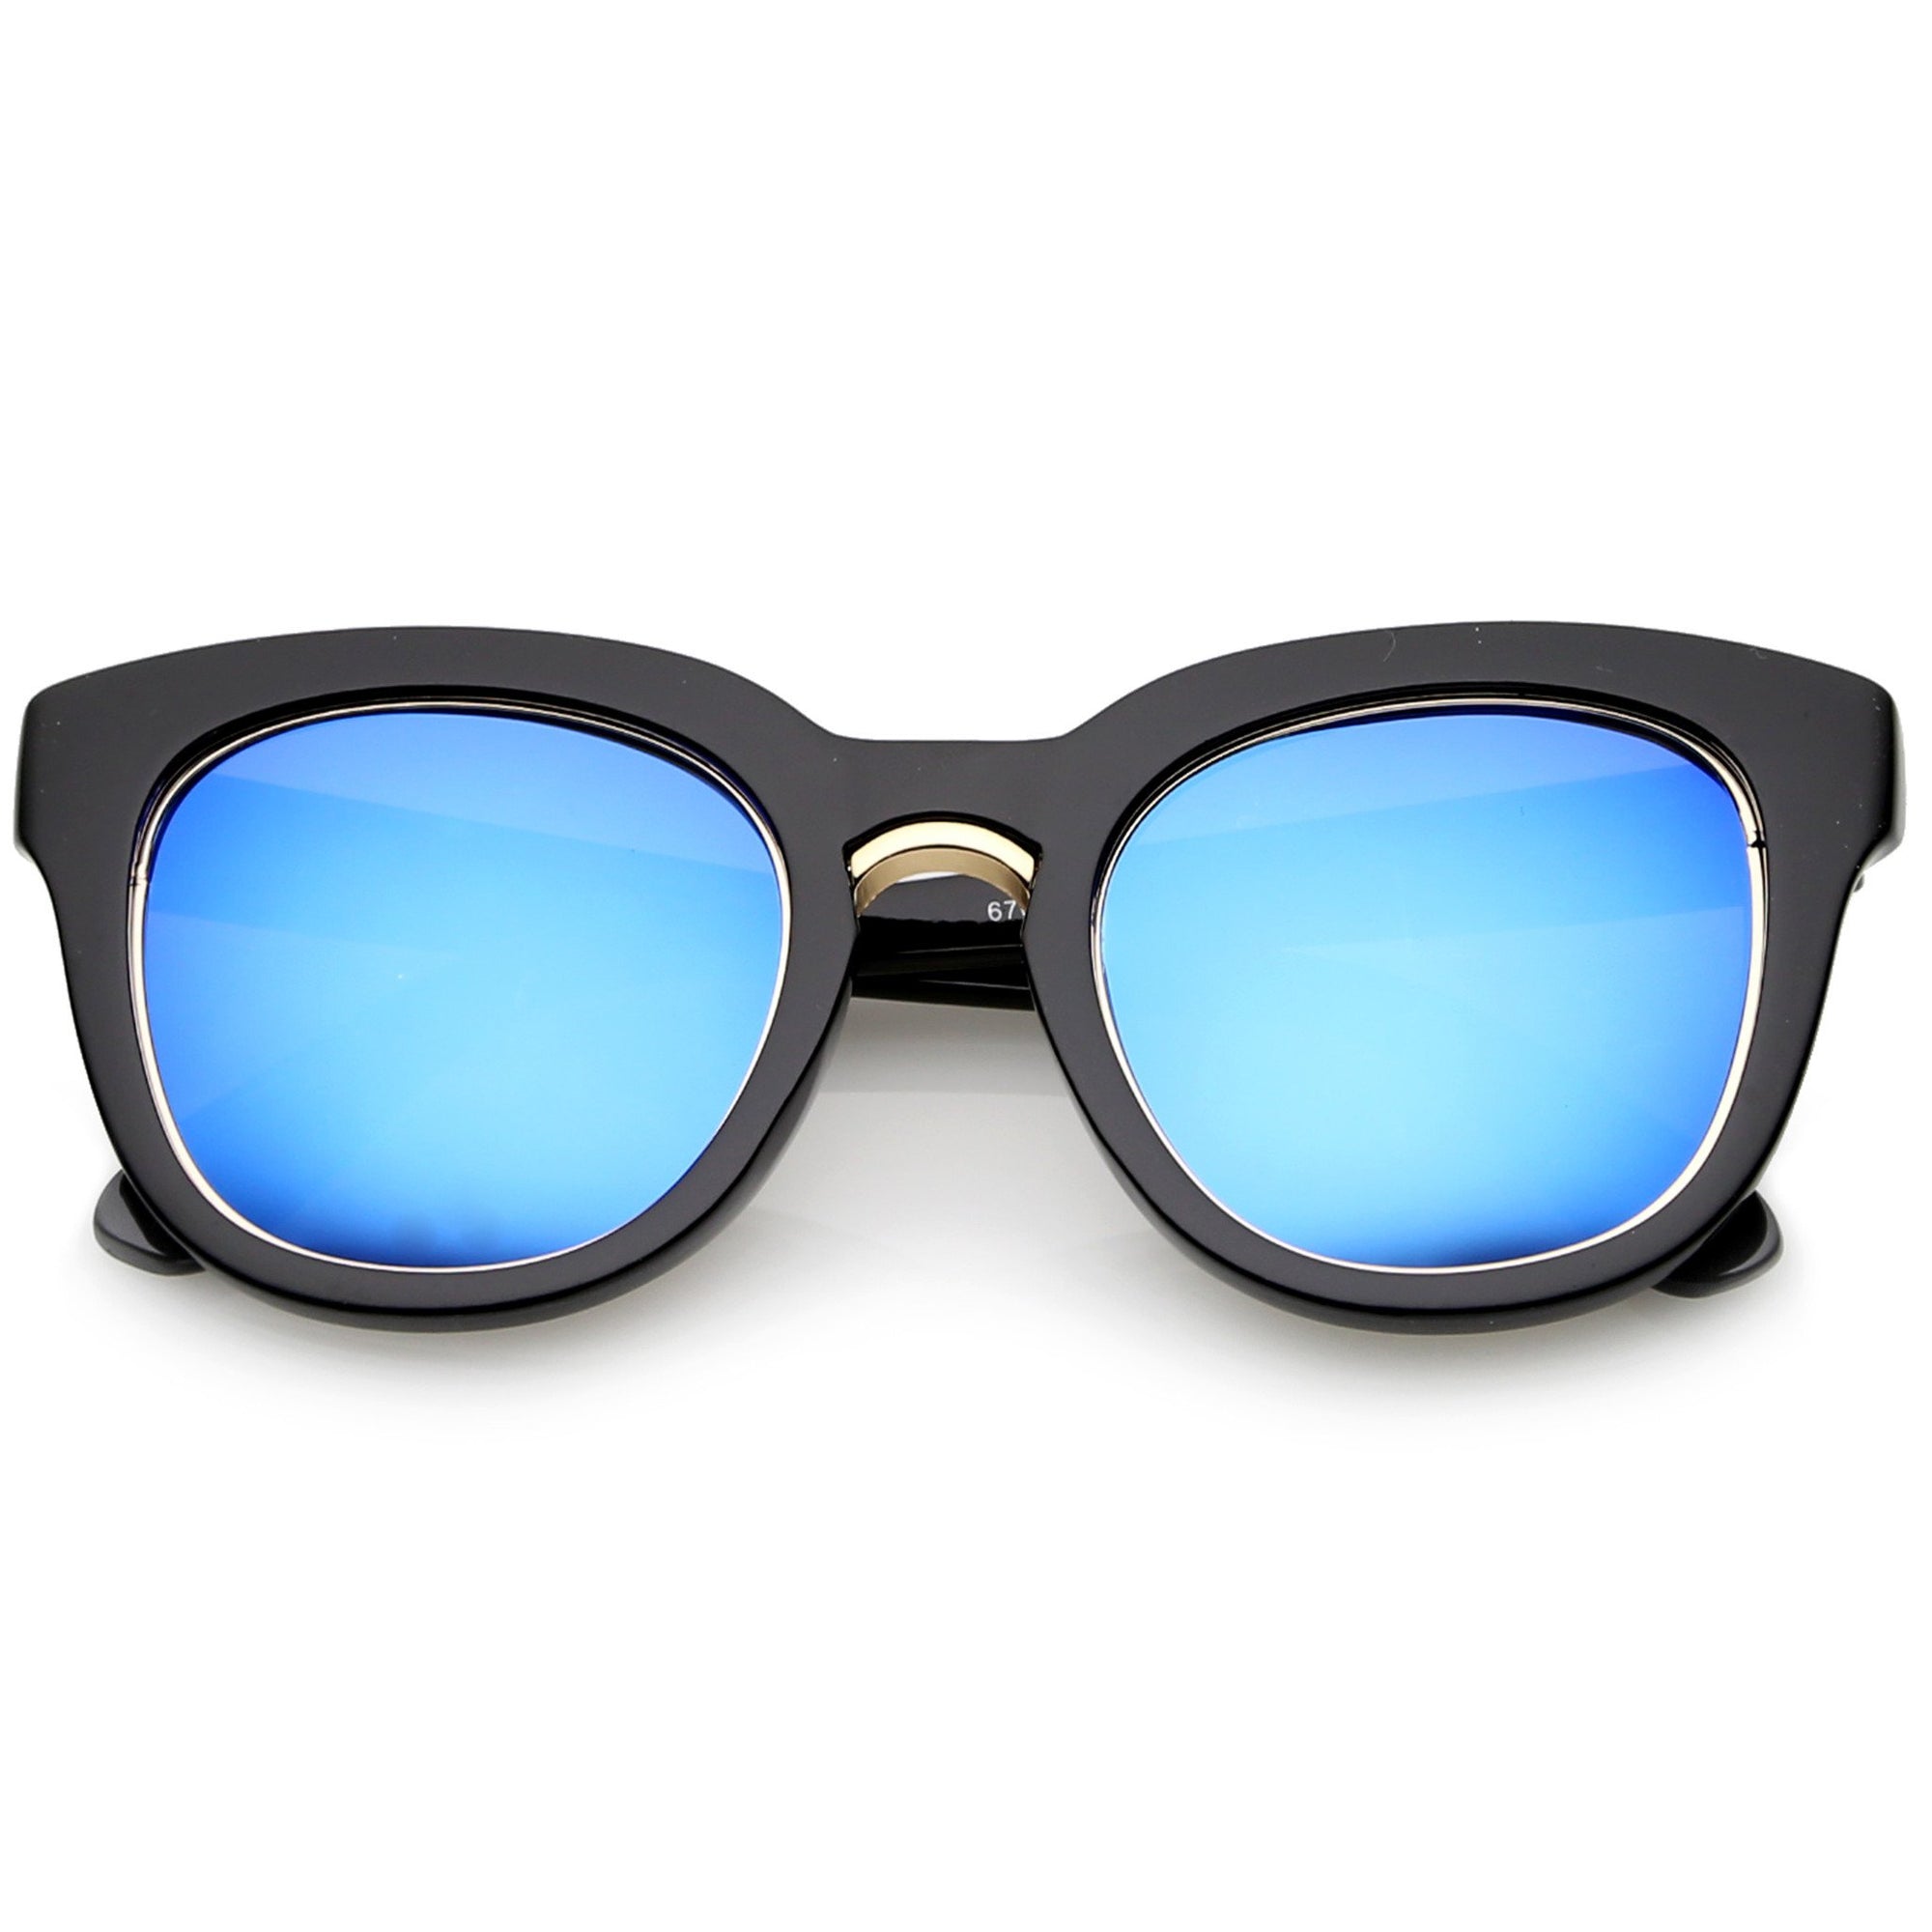 Women's Trimmed Lens Horned Rim Sunglasses - zeroUV